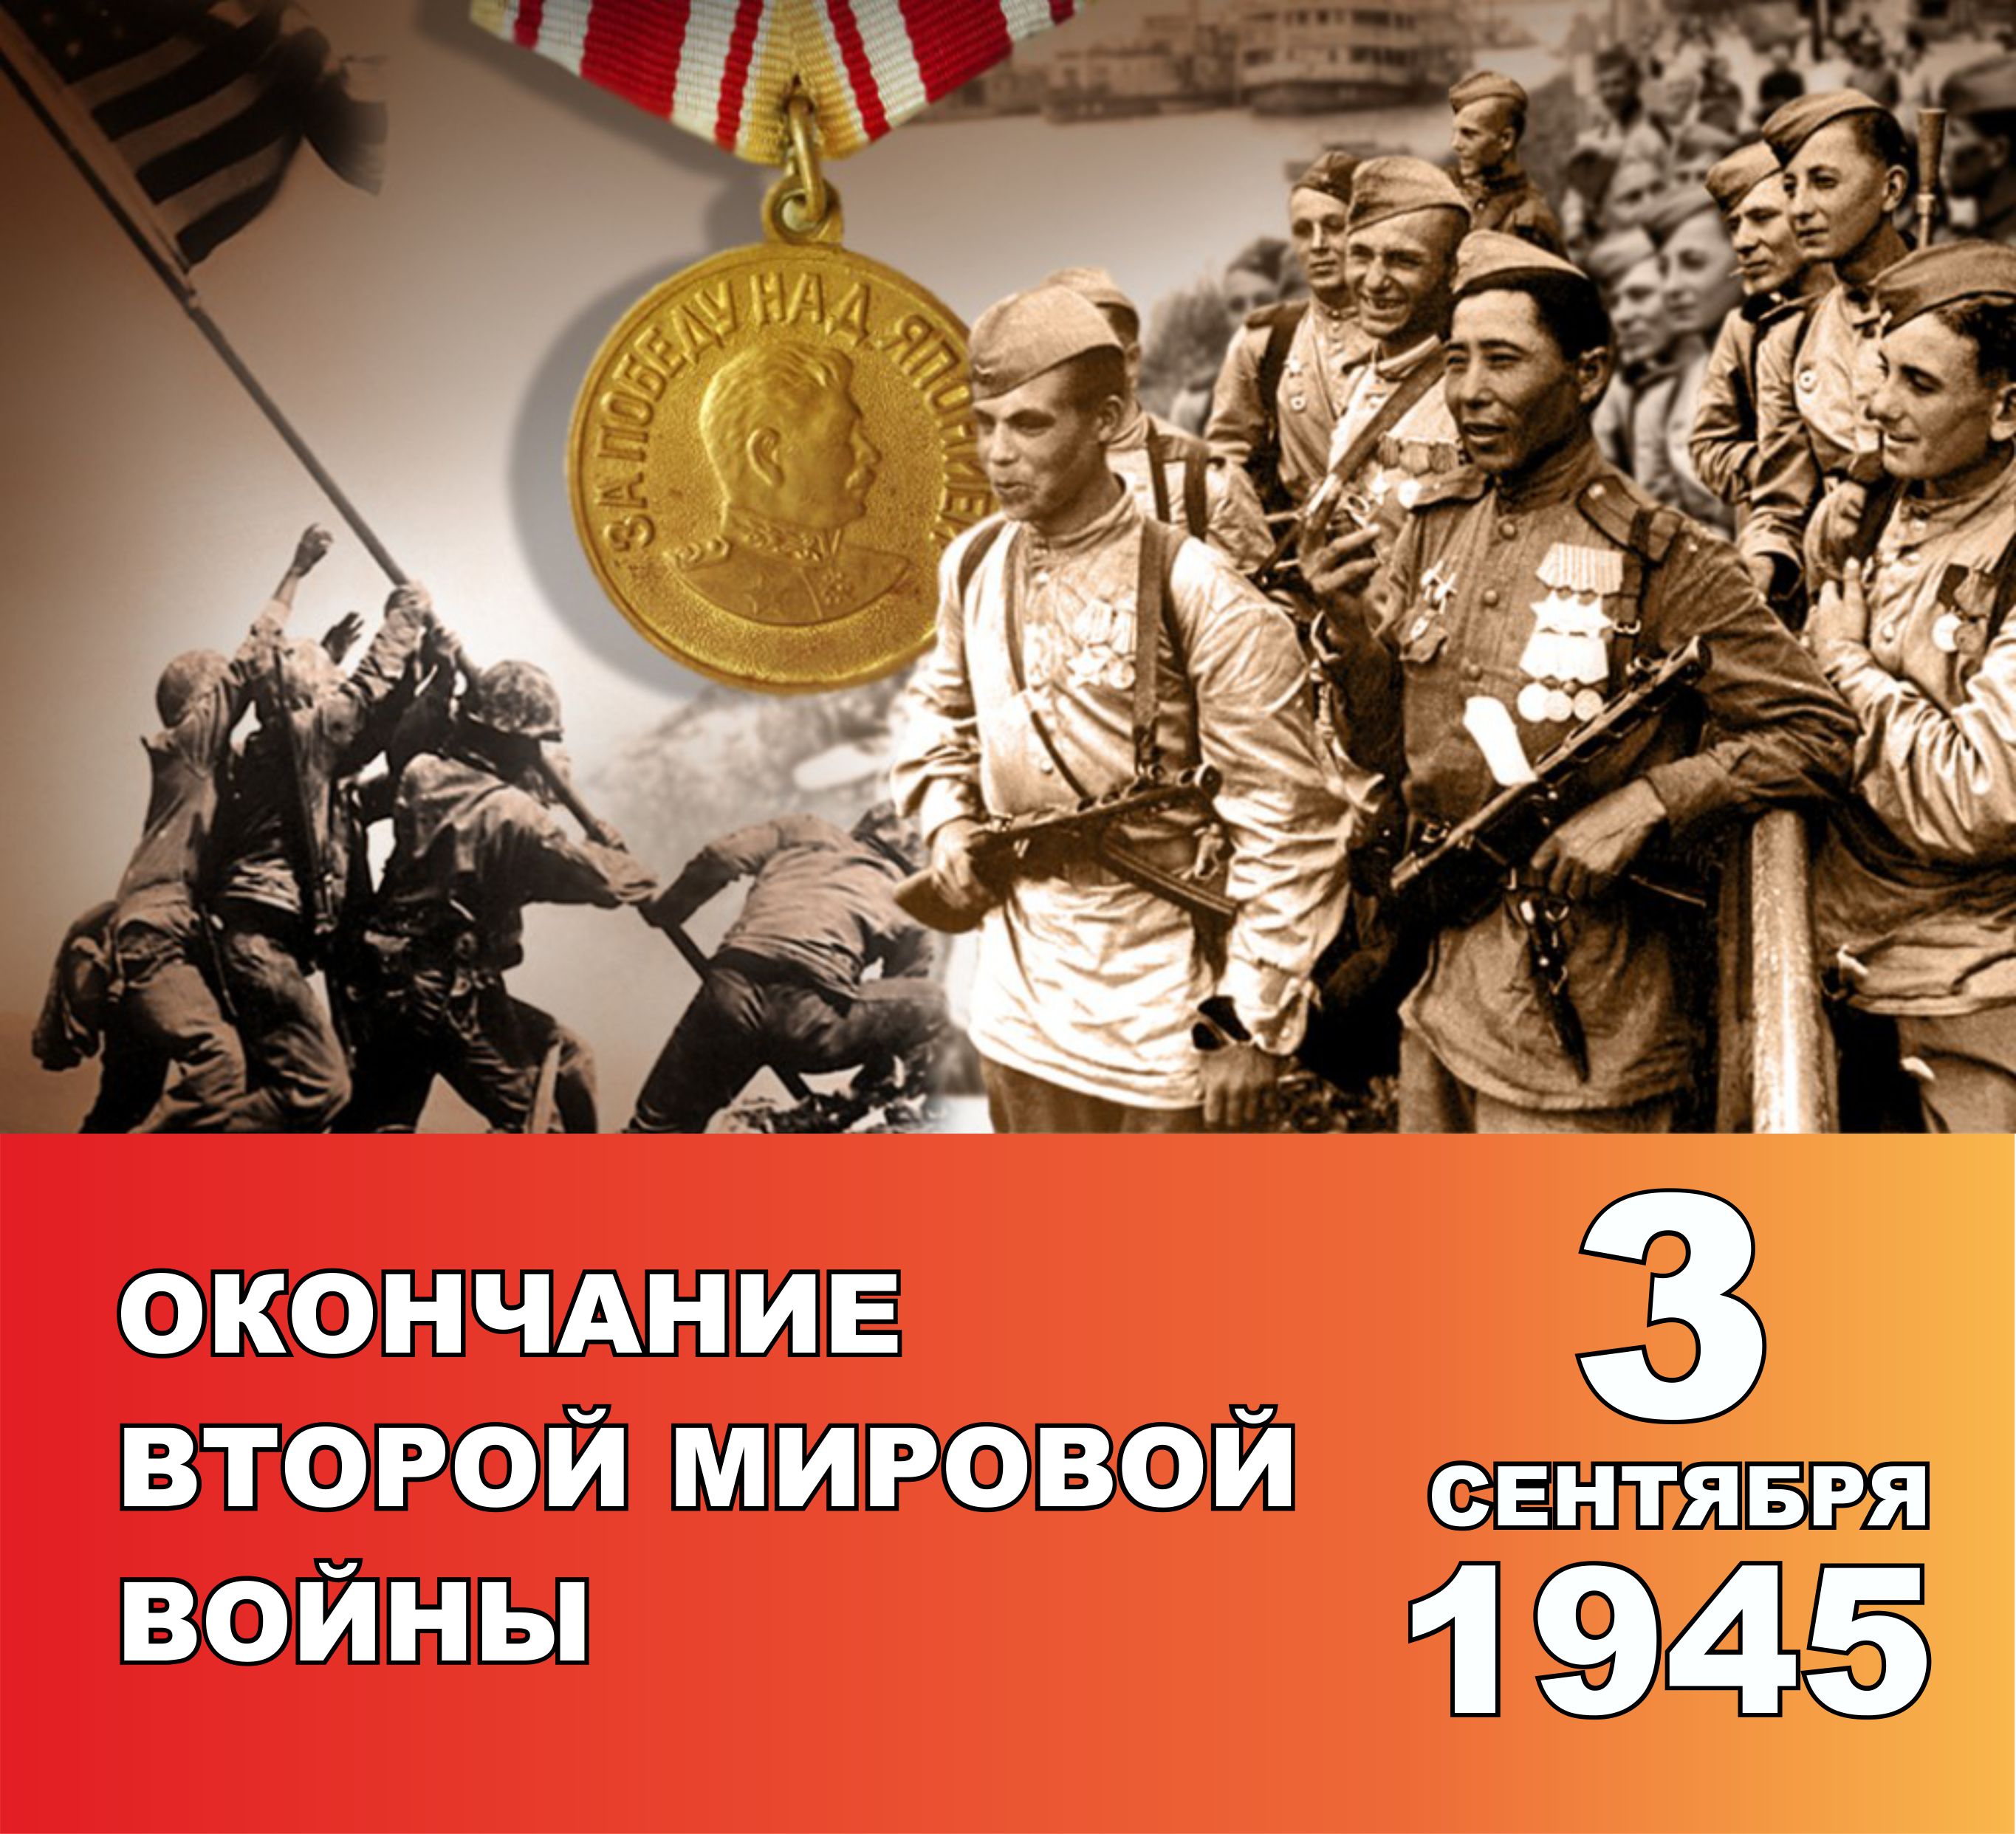 3 сентября день окончания второй мировой войны 1945 год